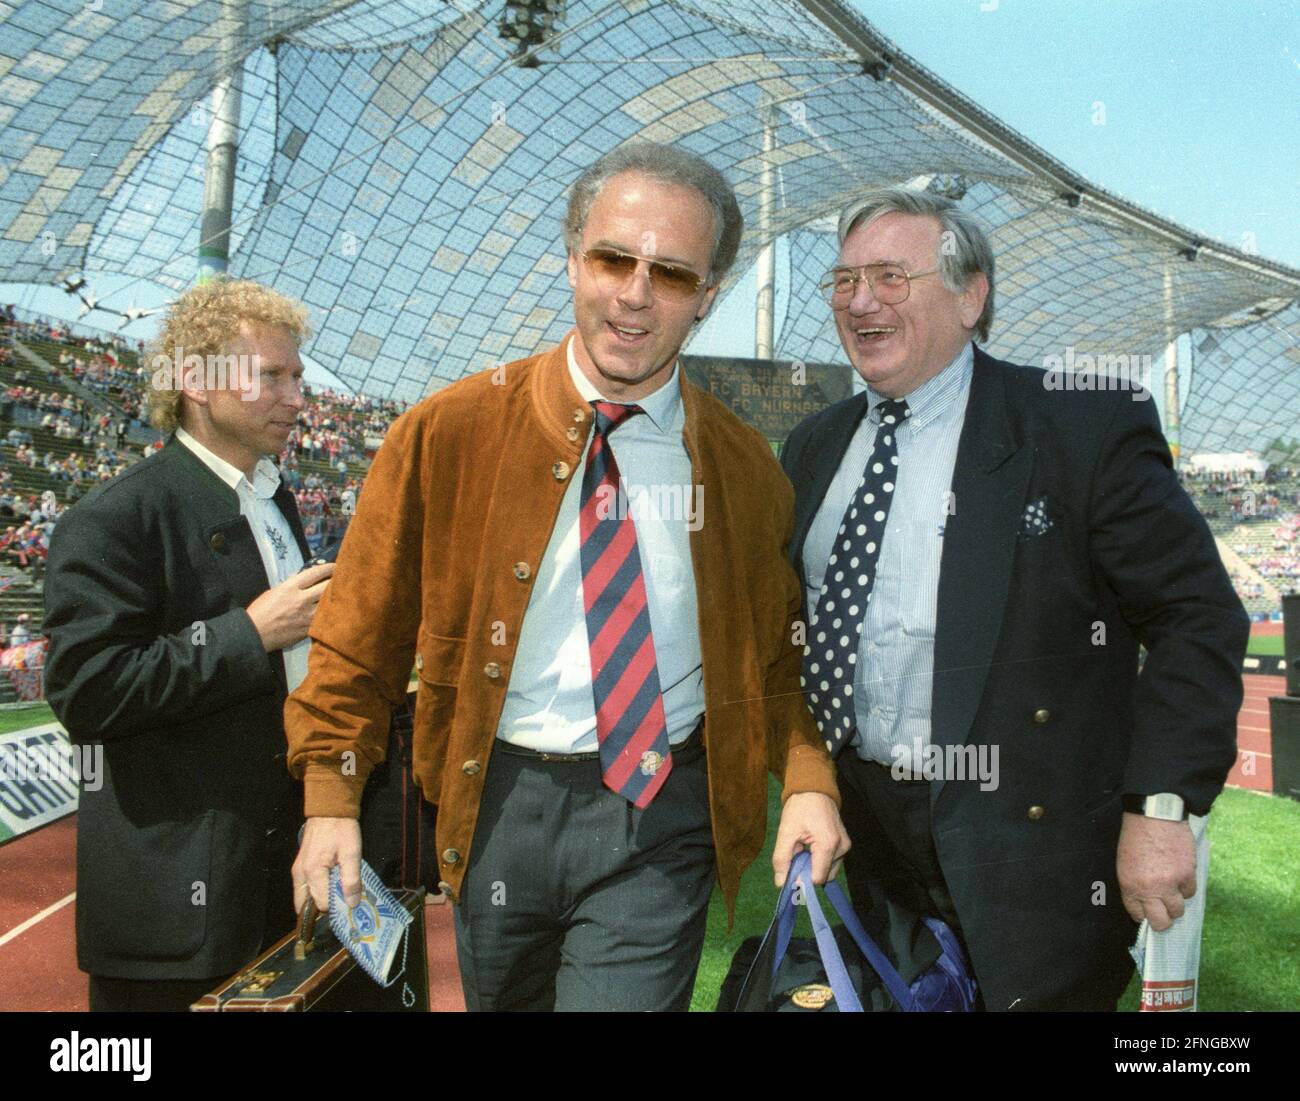 FC Bayern München - FC Schalke 04 2:0/07.05.1994. L'entraîneur Franz Beckenbauer (FC Bayern München) avec le vétéran de Schalke Charly Neumann. [traduction automatique] Banque D'Images